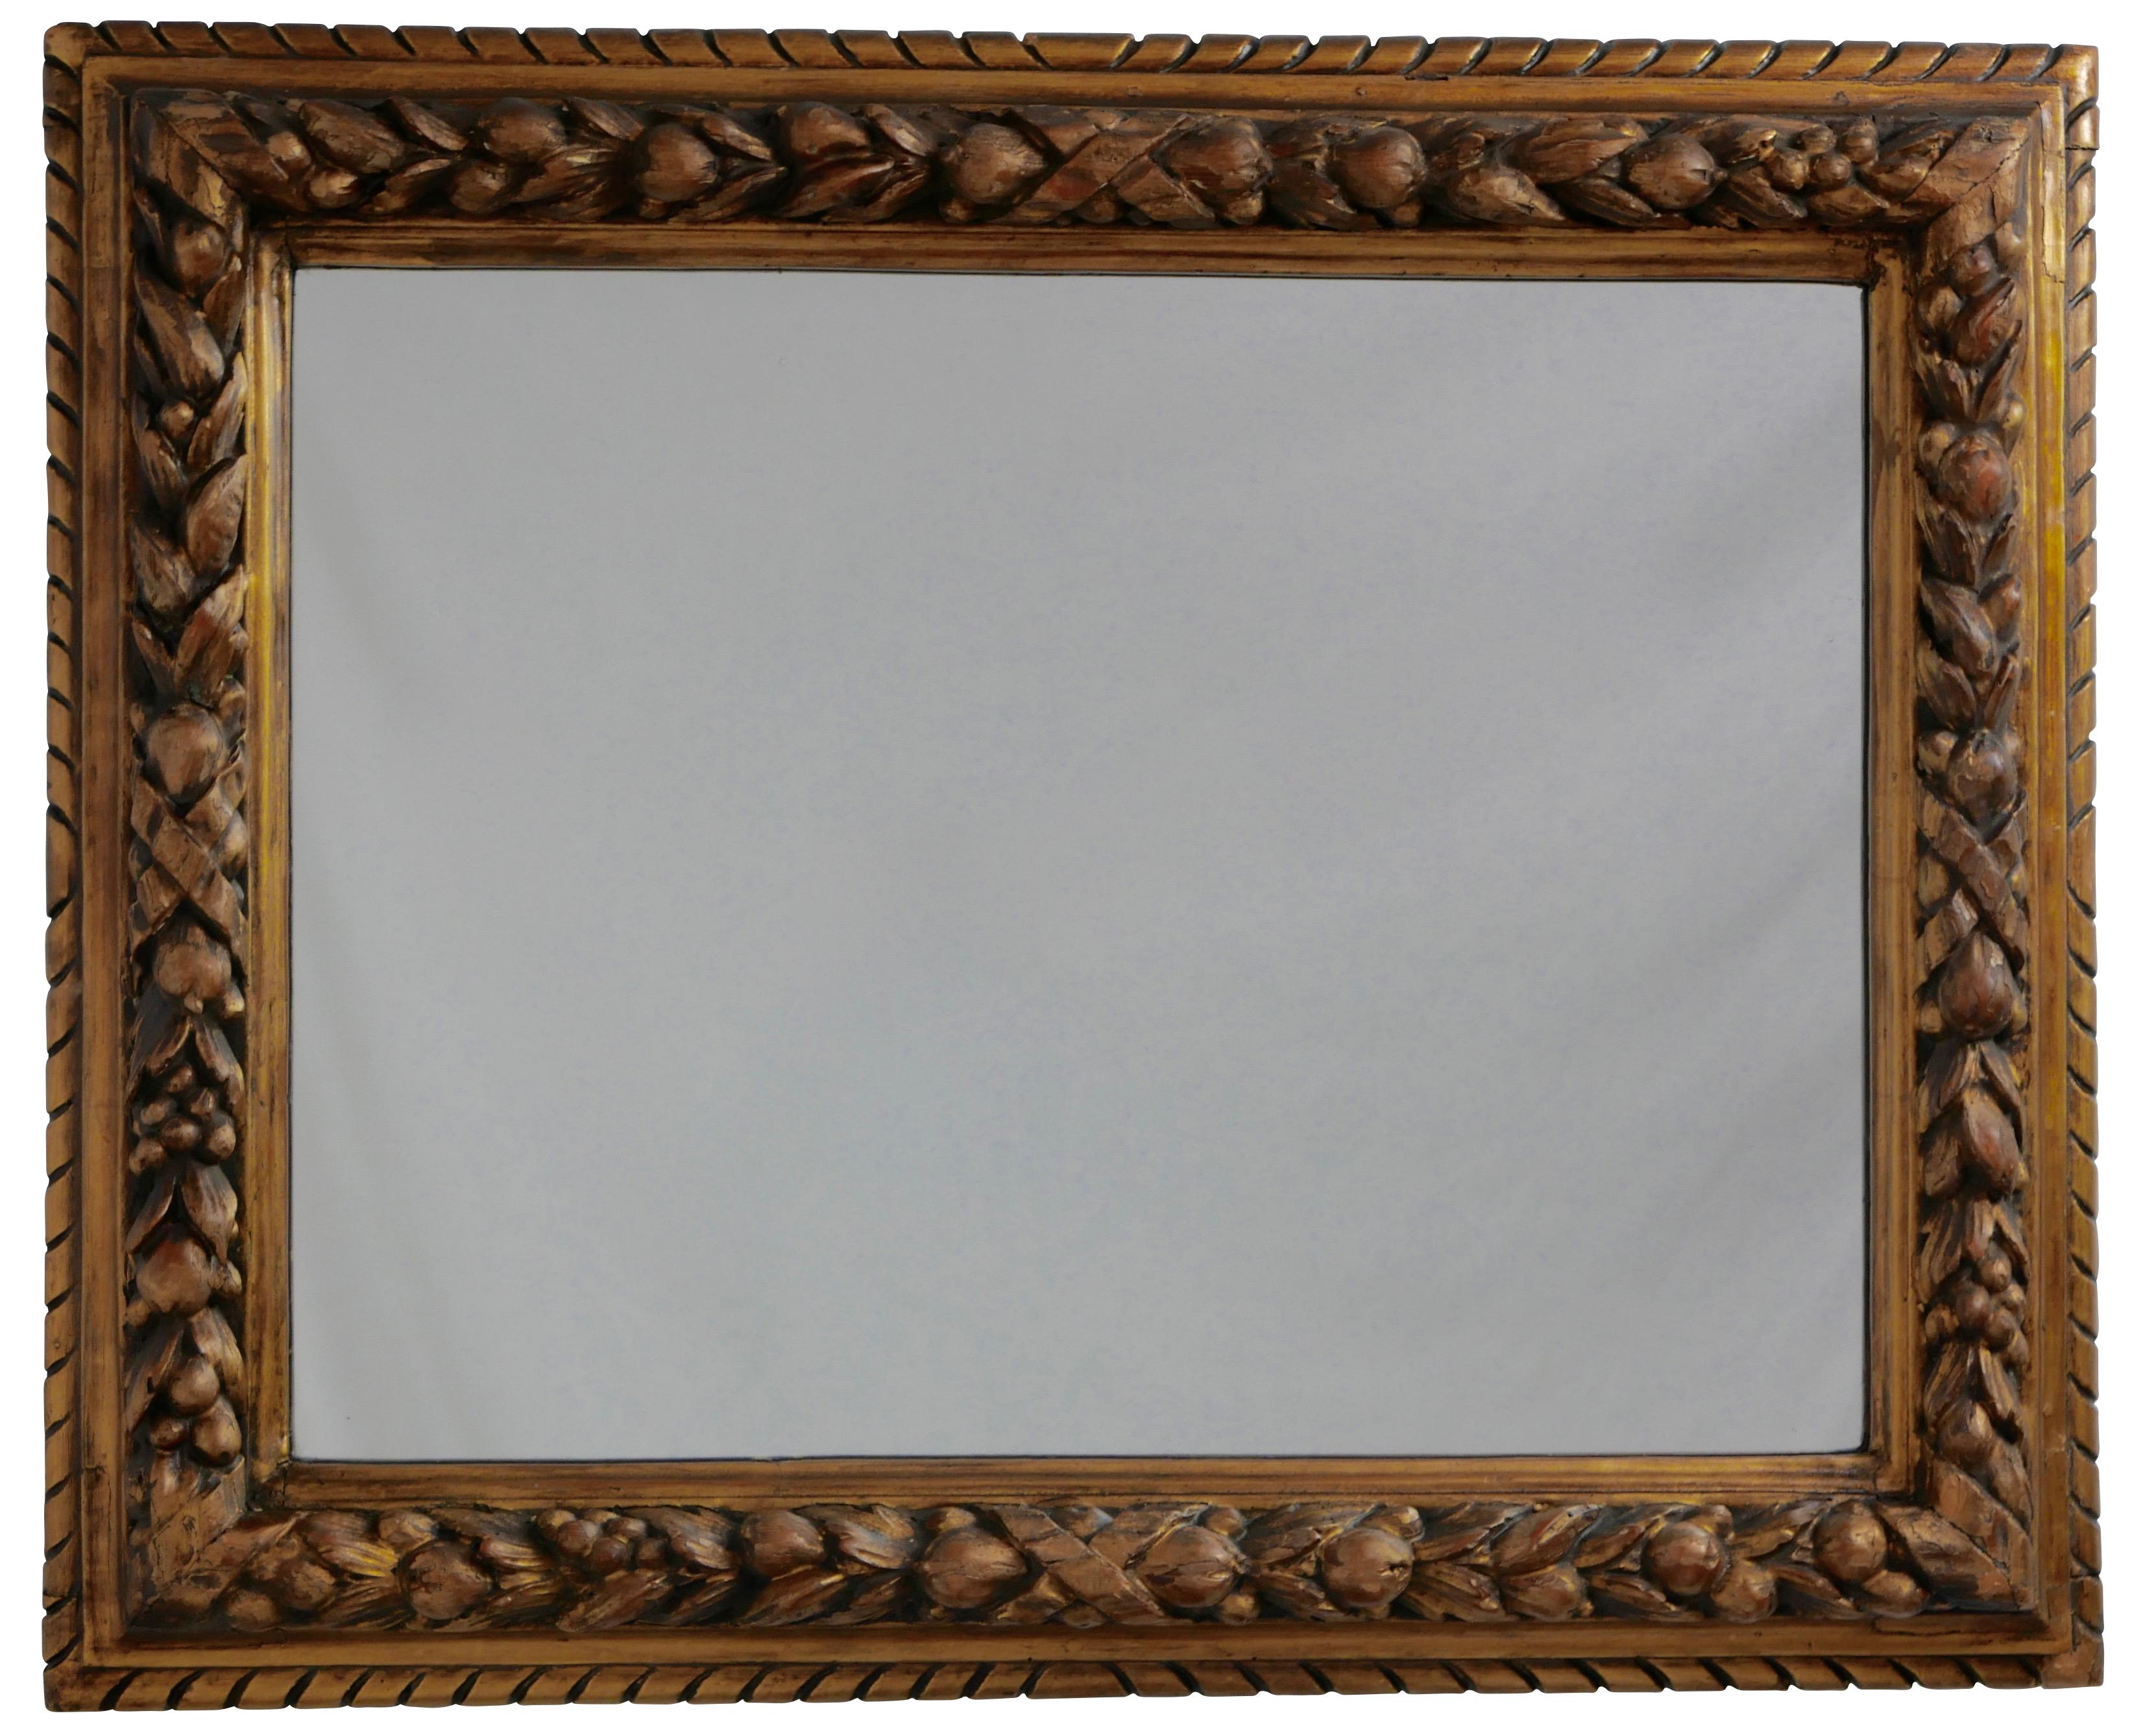 Miroir encadré, sculpté à la main, représentant des fruits et des noix en couches, avec finition dorée frottée. Le miroir peut être suspendu à la verticale ou à l'horizontale.
Italie, vers 1880.